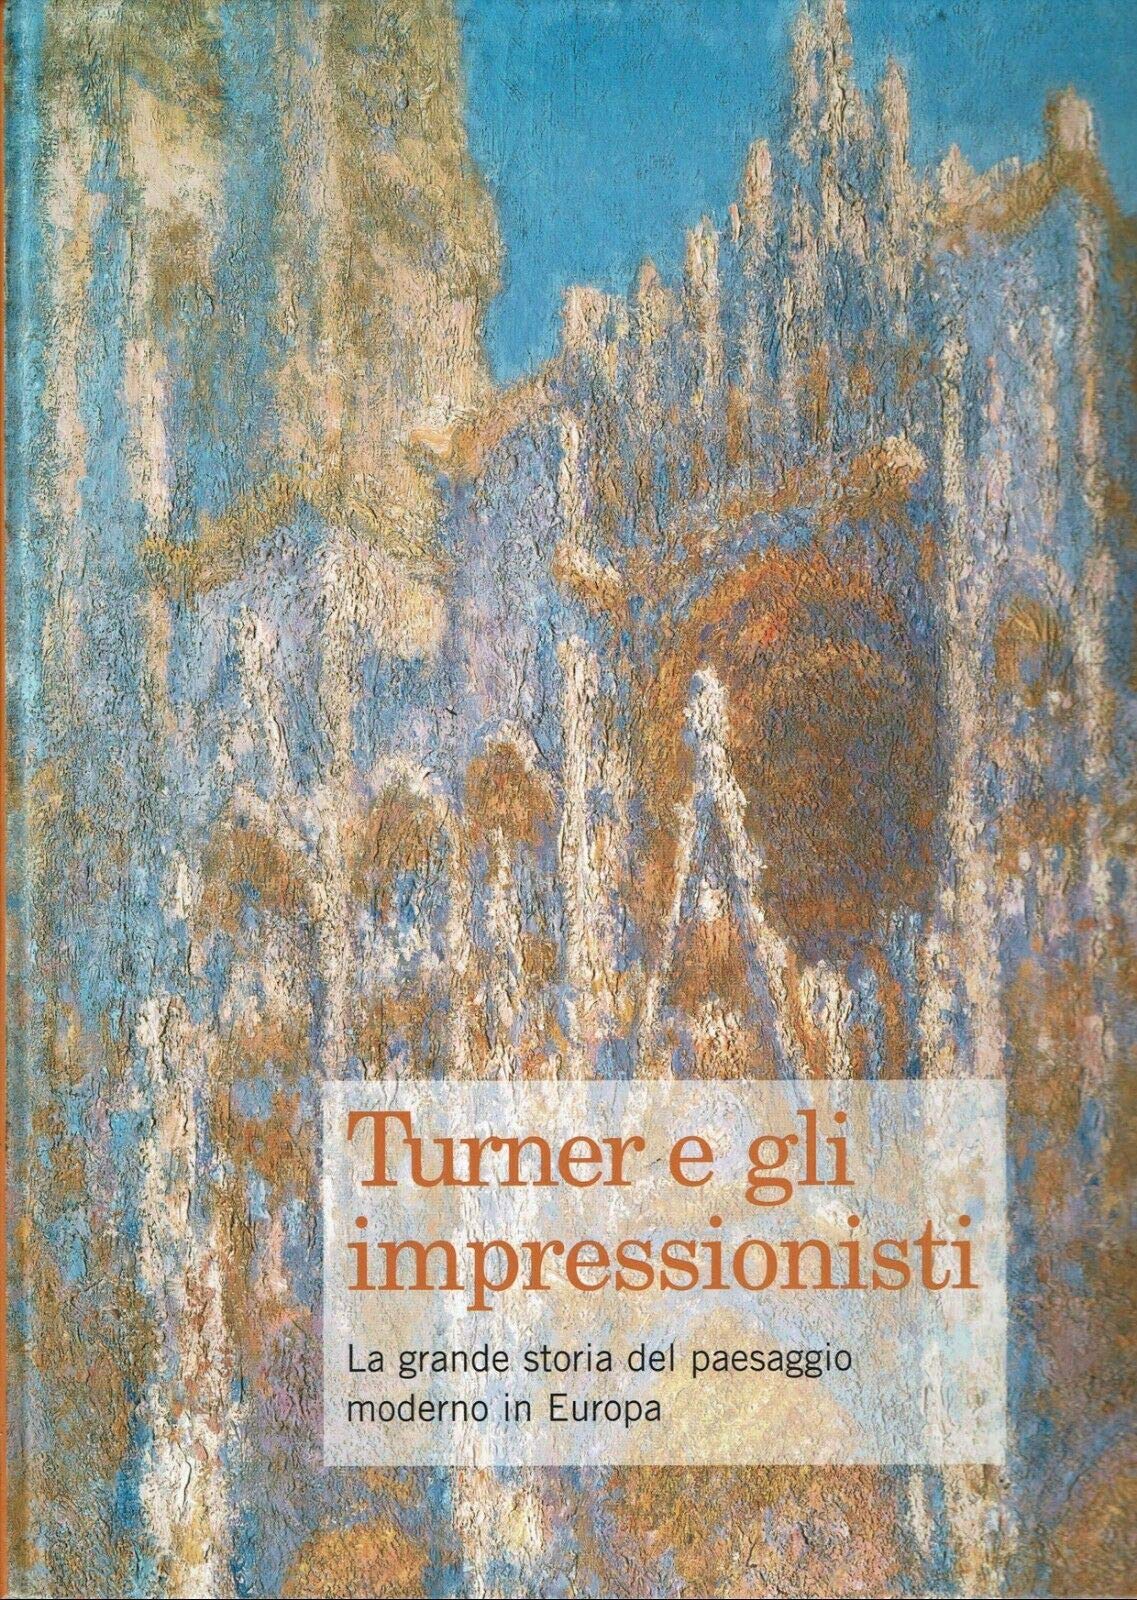 Turner e gli impressionisti. La grande storia del paesaggio moderno in Europa.